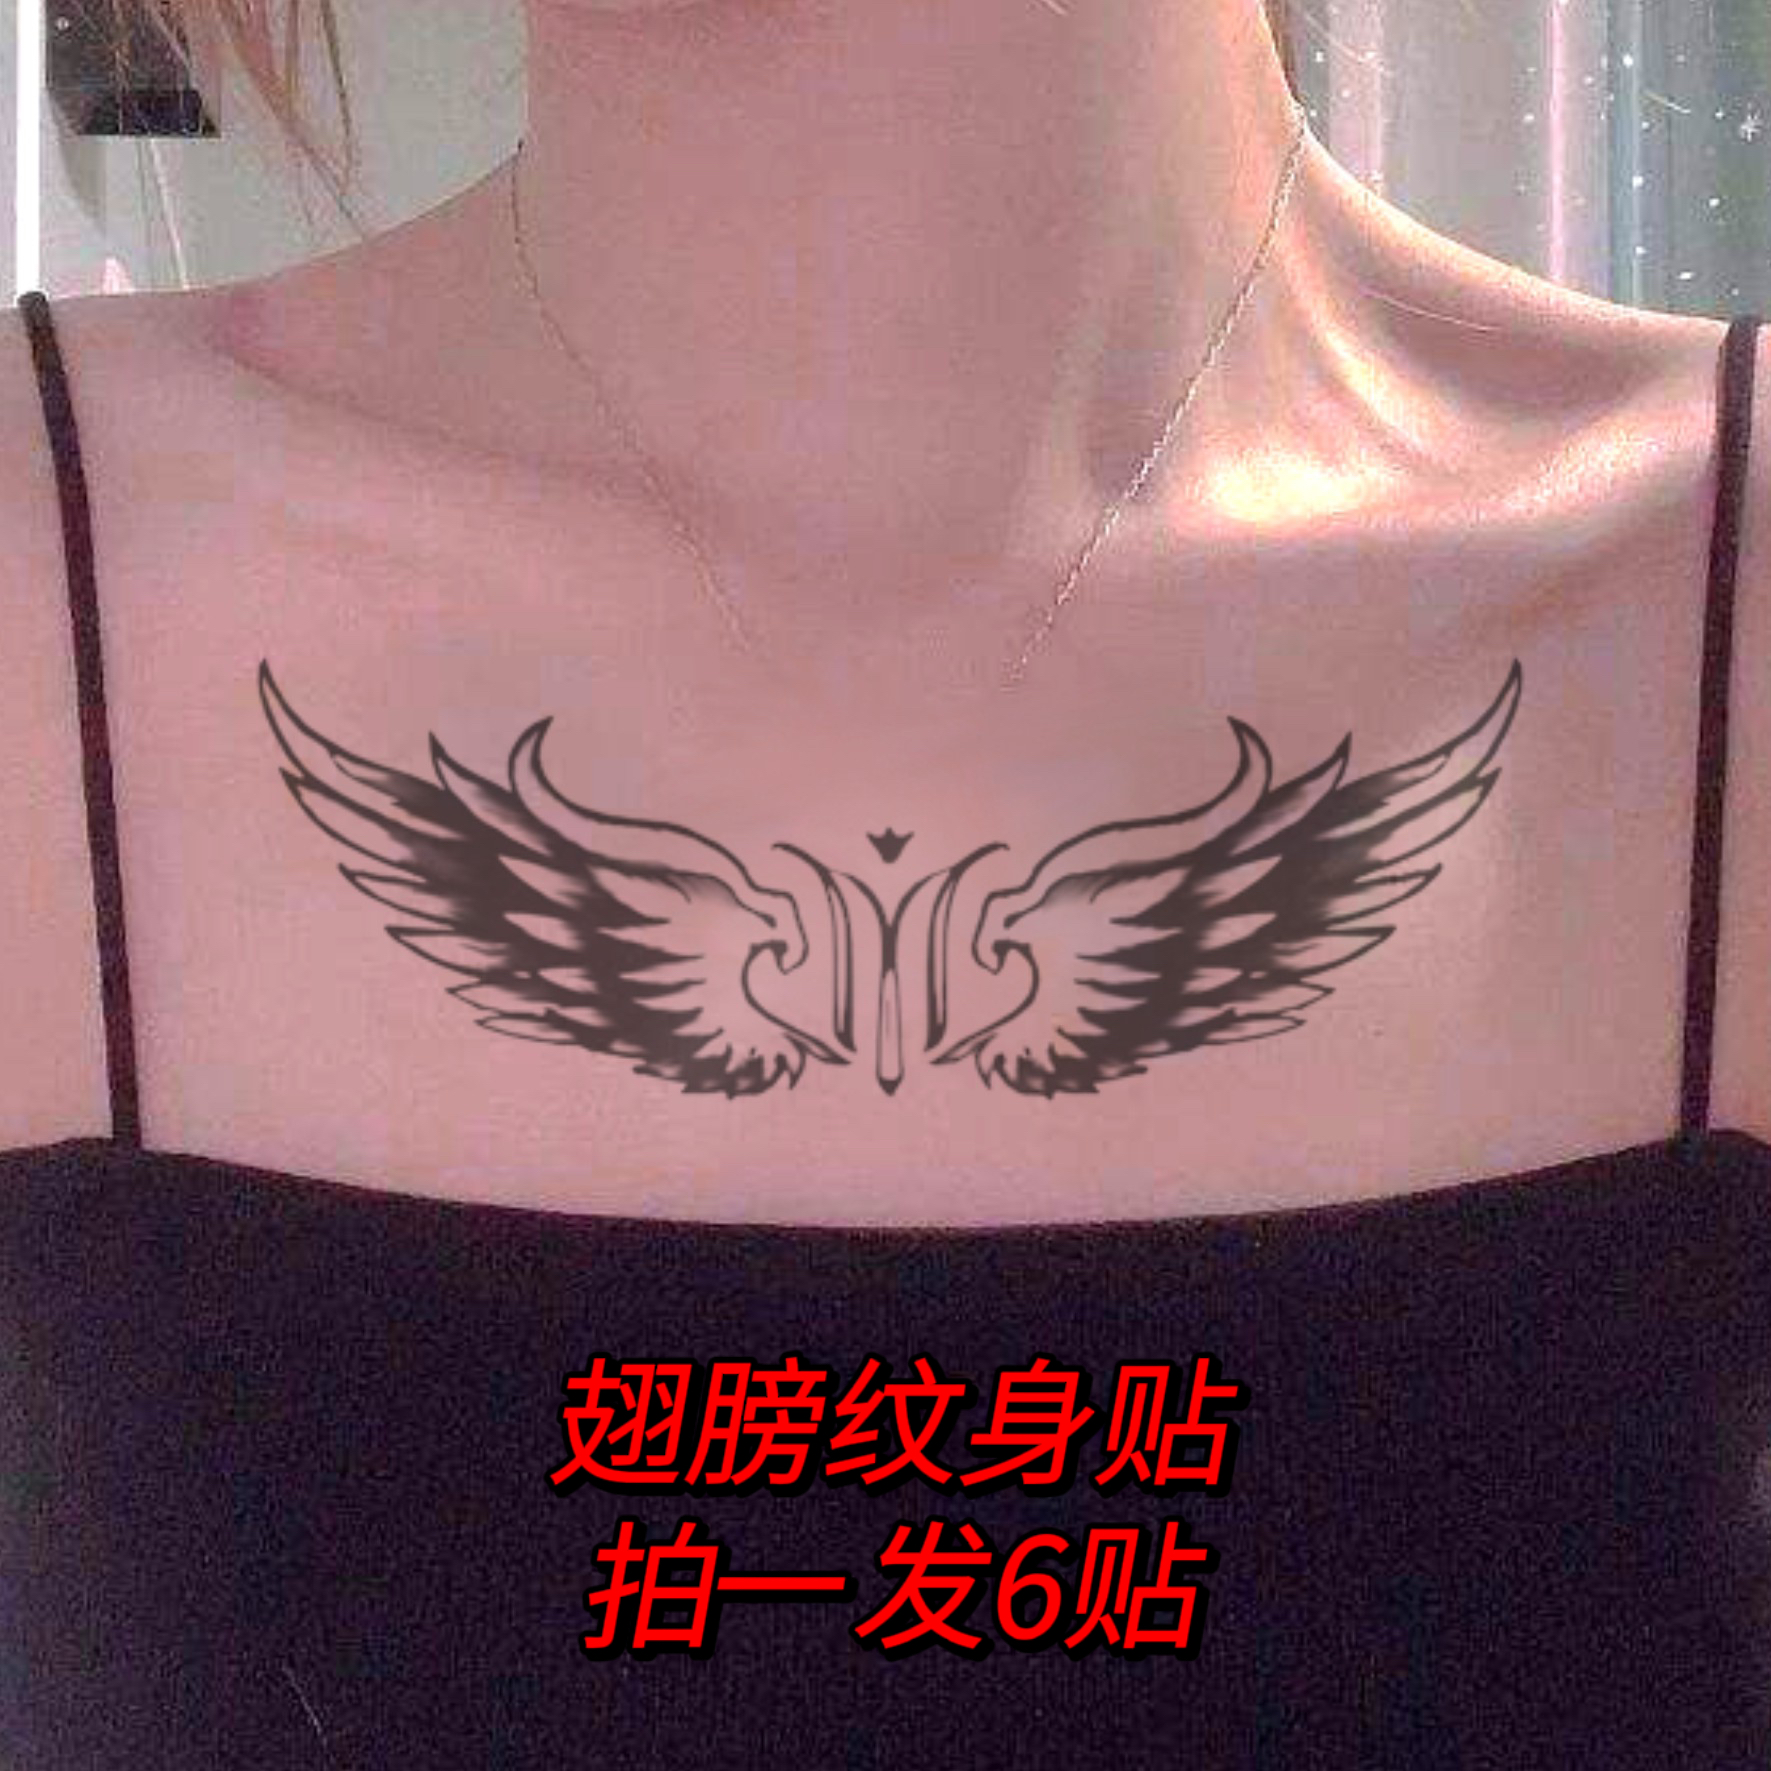 天使之翼翅膀沈曼纹身贴电影周边倪妮同款女生锁骨胸前防水贴纸女